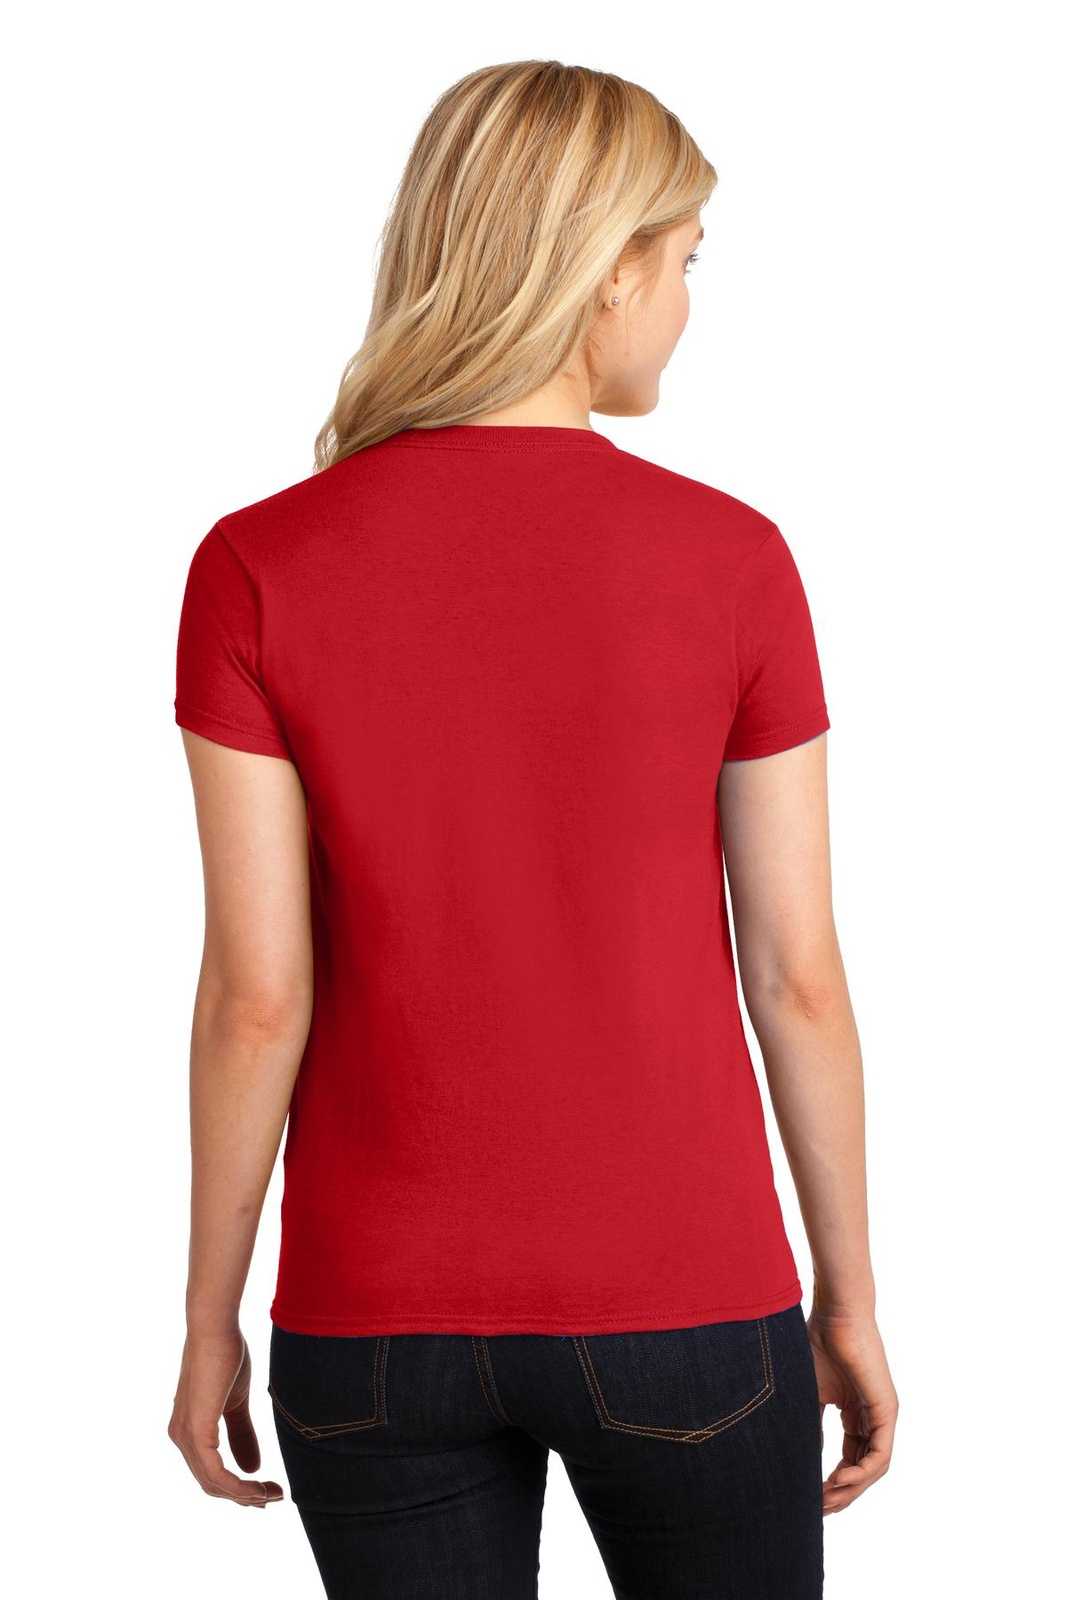 Gildan 5000L Ladies Heavy Cotton 100% Cotton T-Shirt - Red - HIT a Double